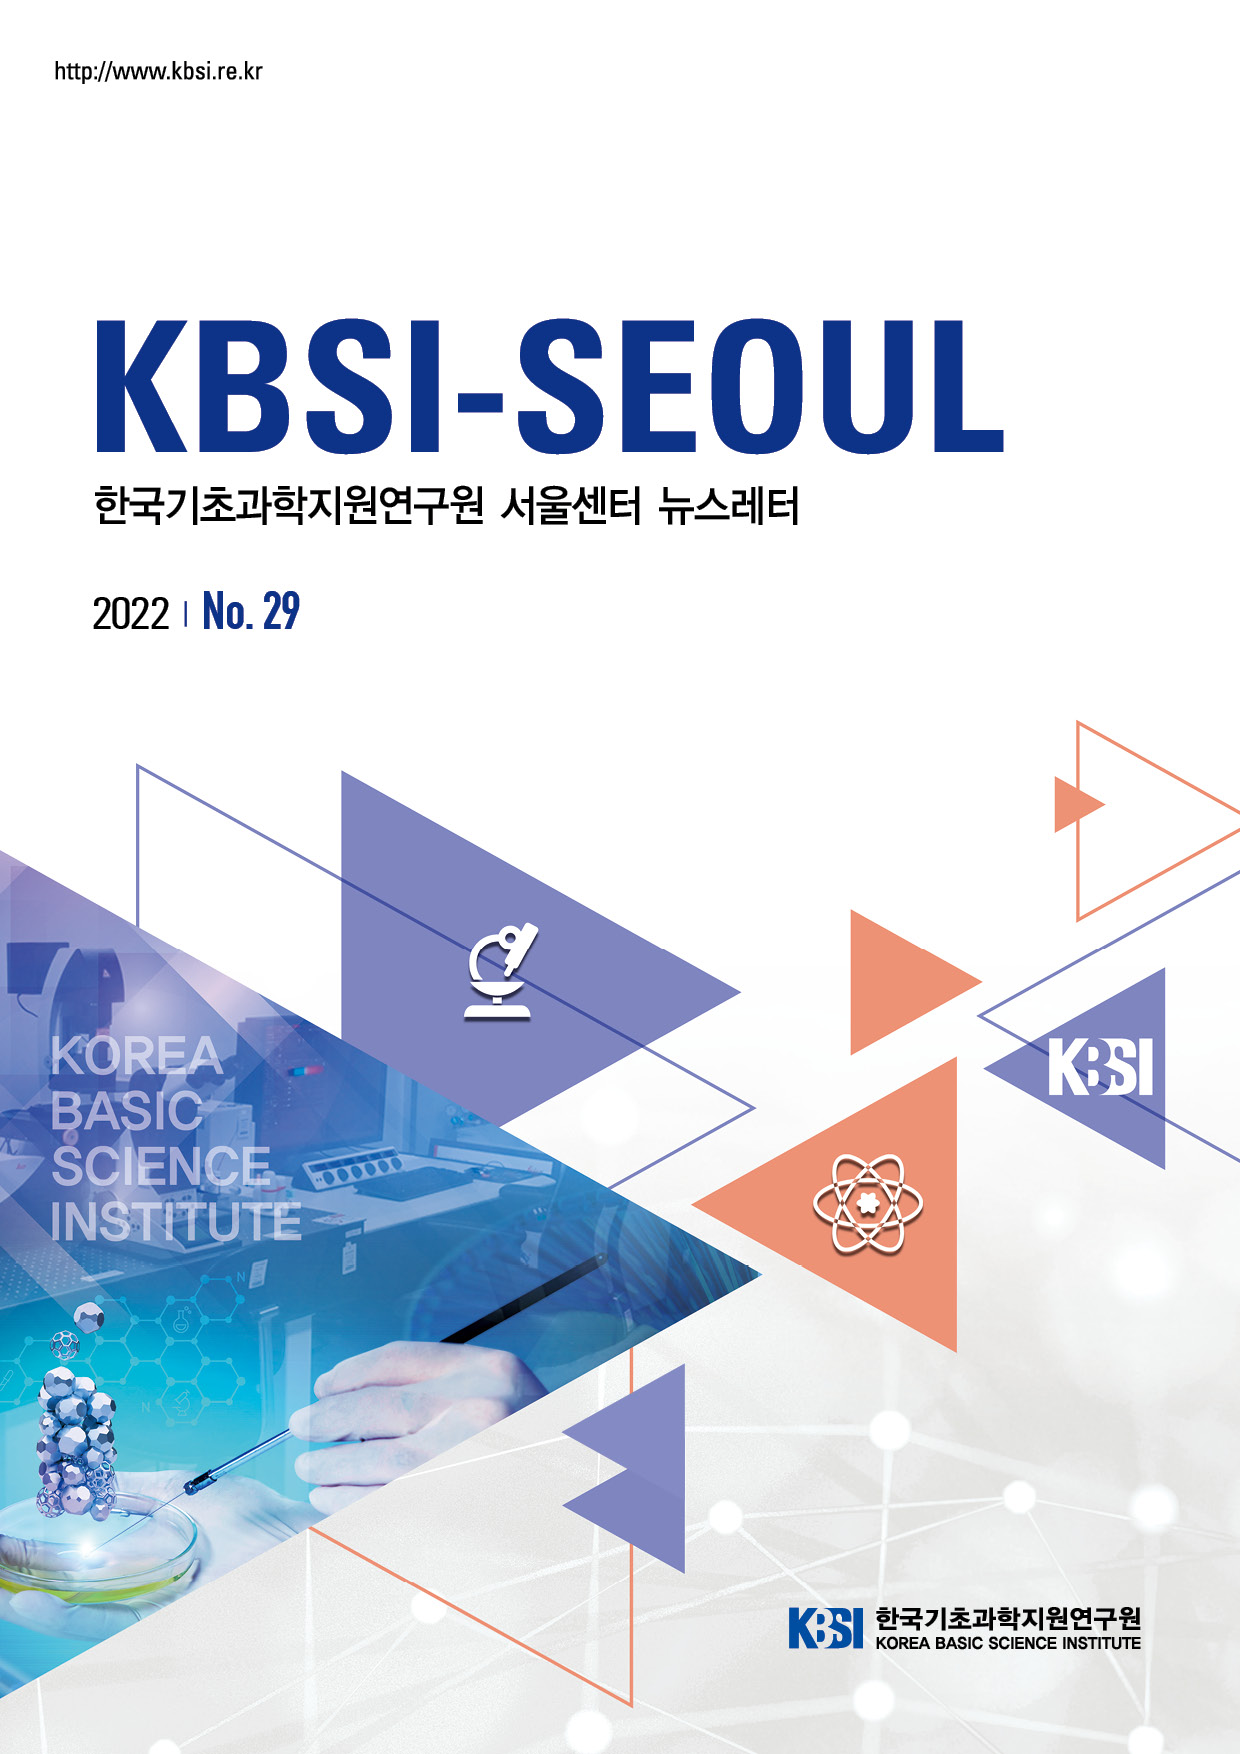 http://www.kbsi.re.kr KBSI-SEOUL 한국기초과학지원연구원 서울센터 뉴스레터 2022 | No.29 KBSI 한국기초과학지원연구원 KOREA BASIC SCIENCE INSTITUTE